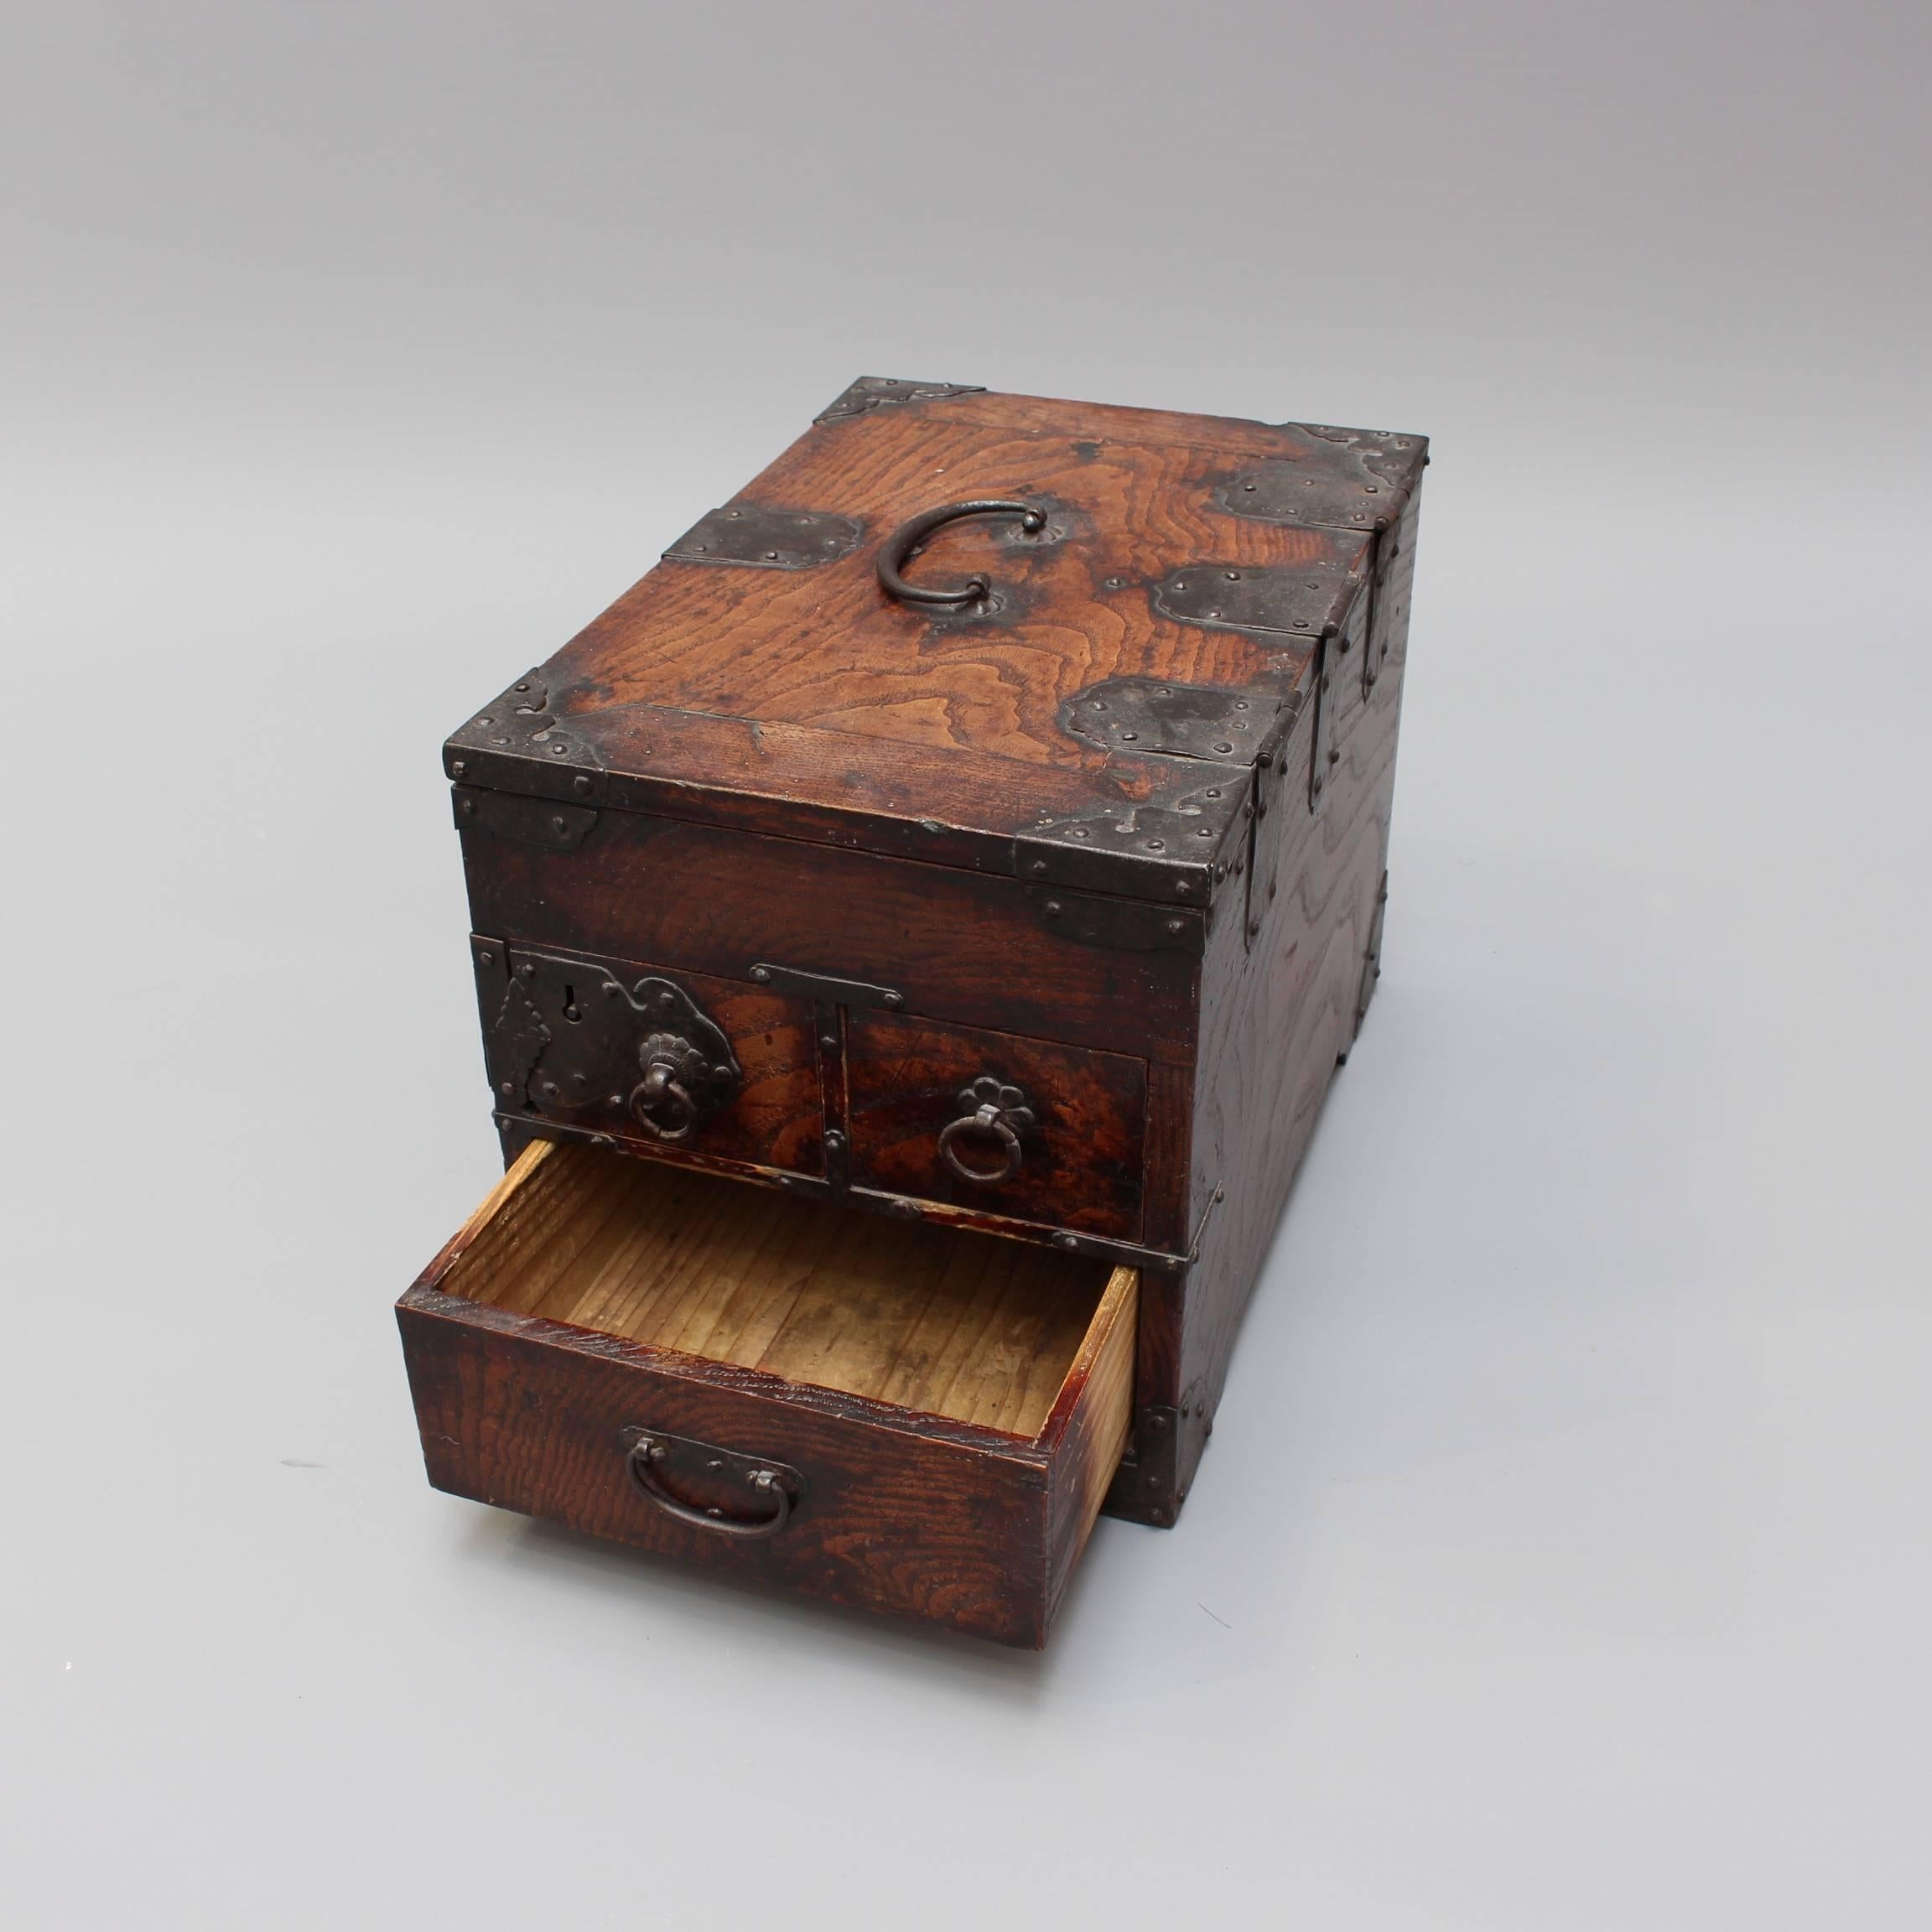 Antique Japanese Wooden Writing Box with Decorative Hardware 'Meiji Era' 4